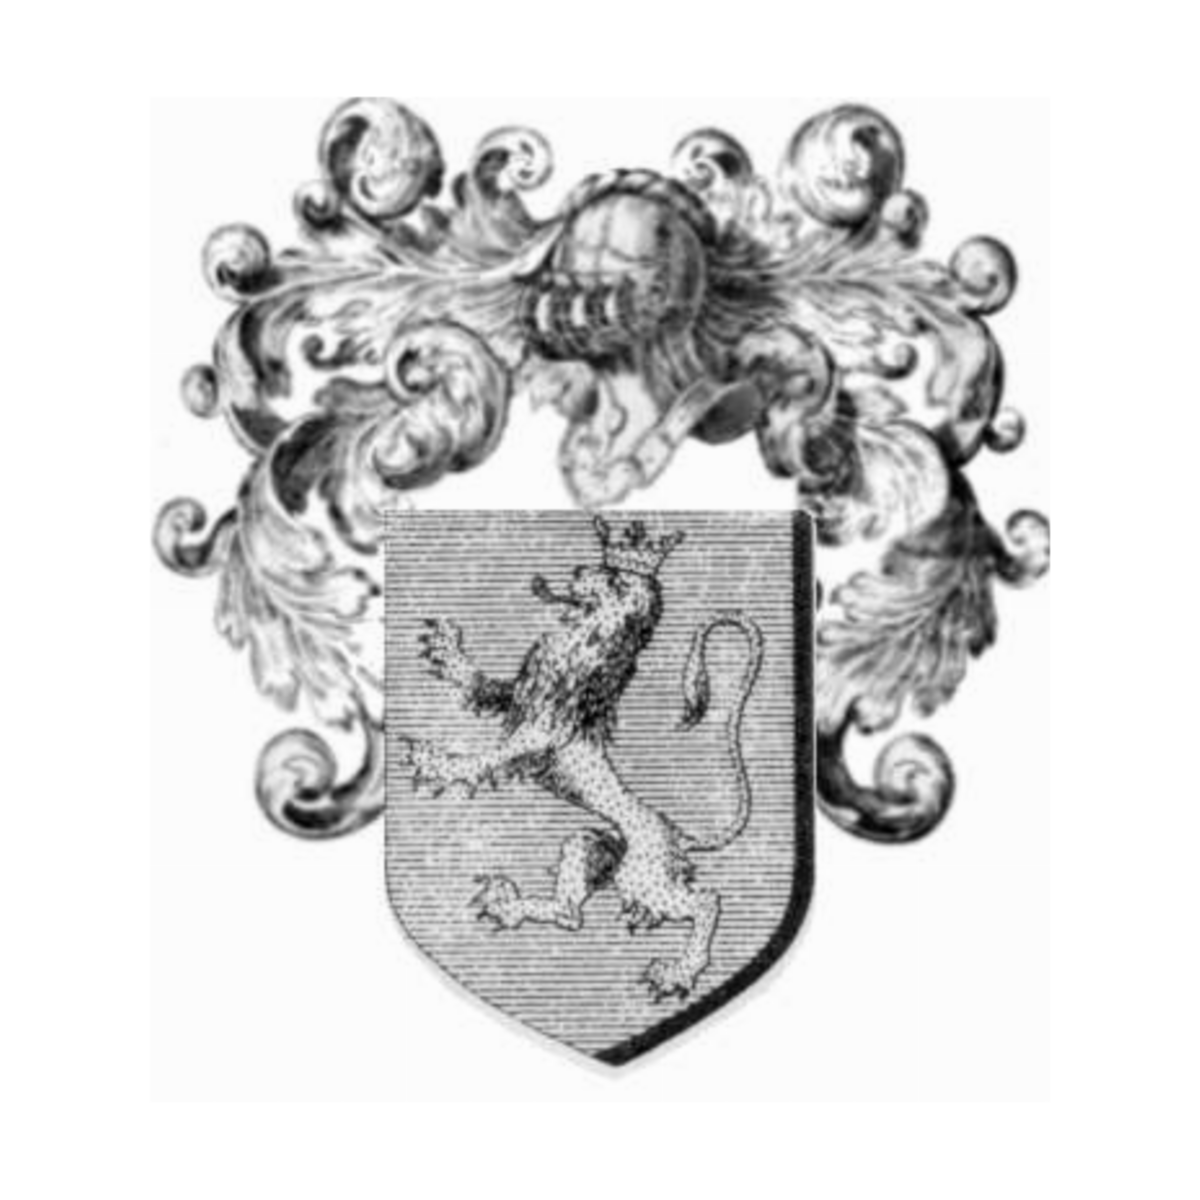 Coat of arms of familyMareschal de Bievre